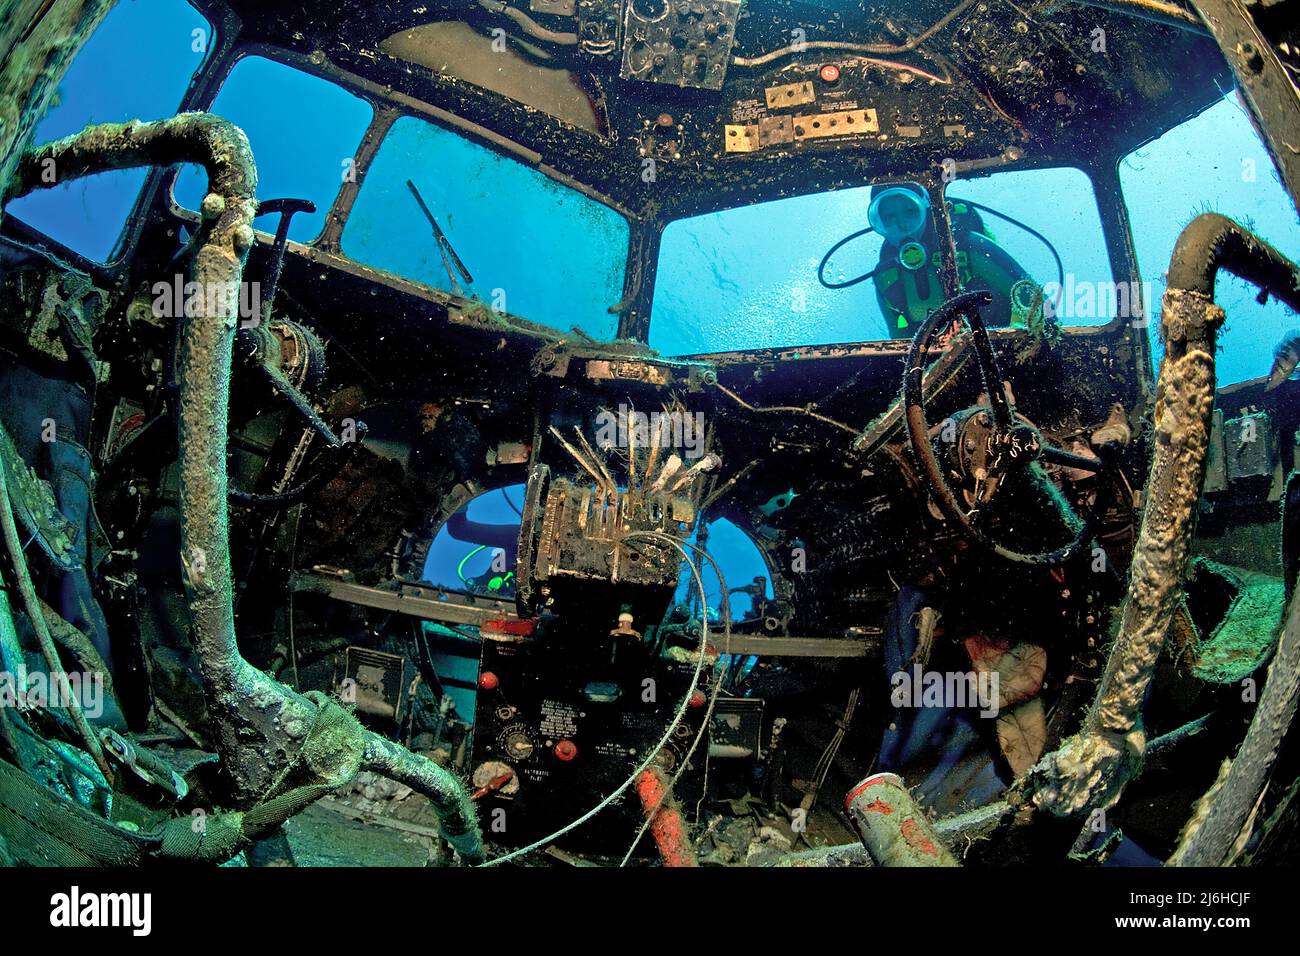 Le poste de pilotage de Douglas C-47, Dakota, avion de transport, version militaire du DC-3, a été submergé pour les plongeurs, Bodrum, Turquie Banque D'Images